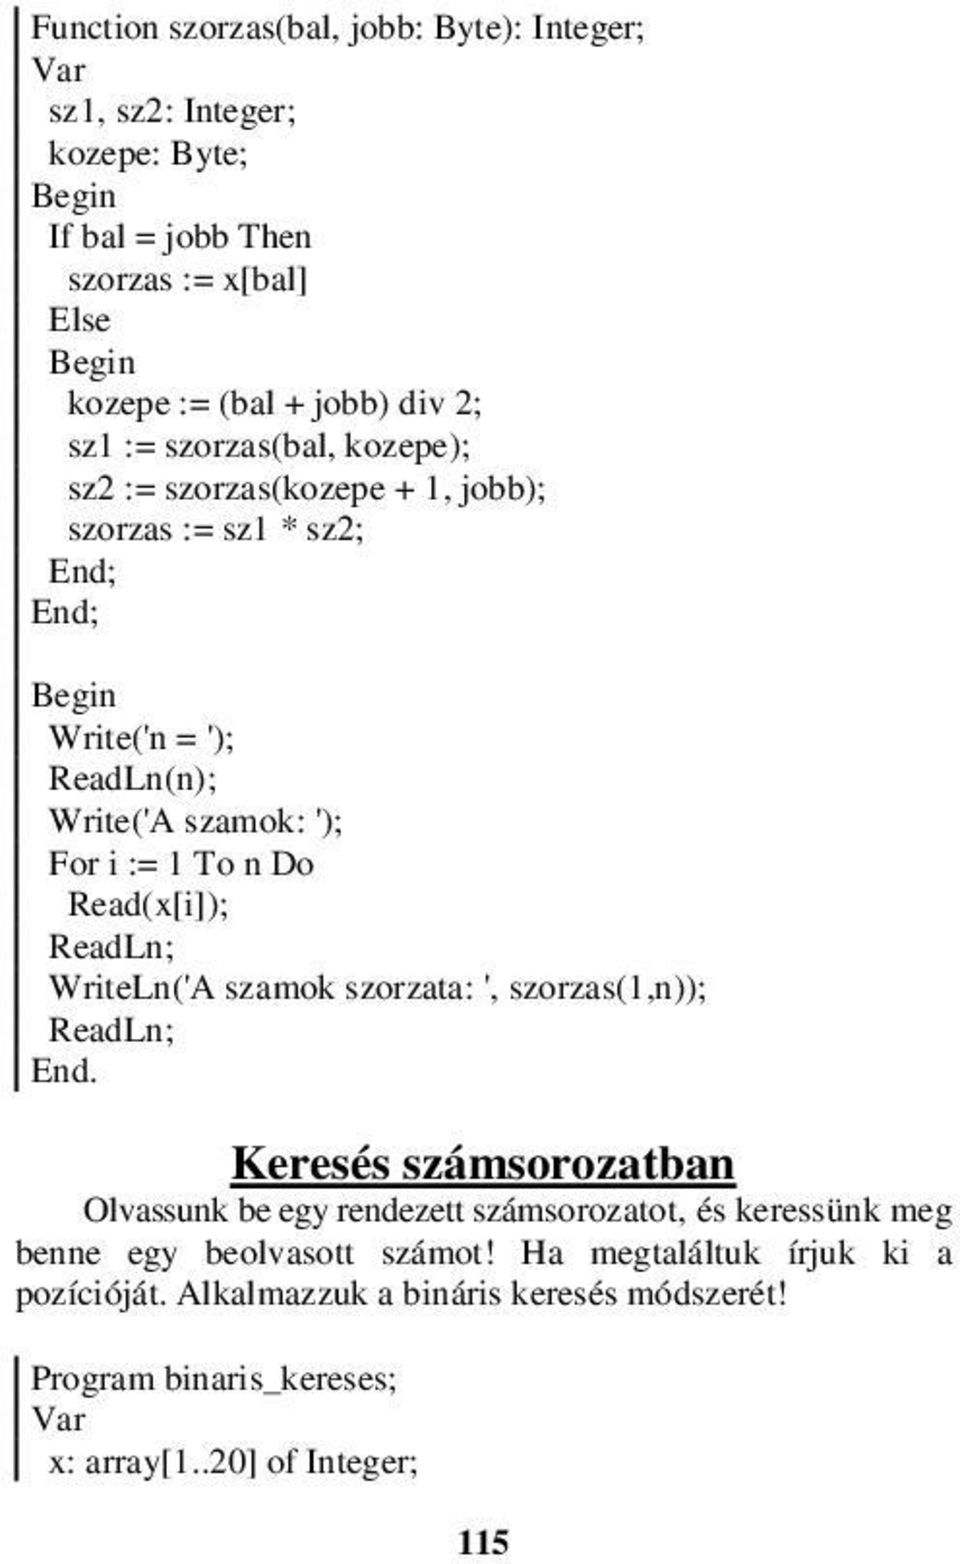 Read(x[i]); WriteLn('A szamok szorzata: ', szorzas(1,n)); End.